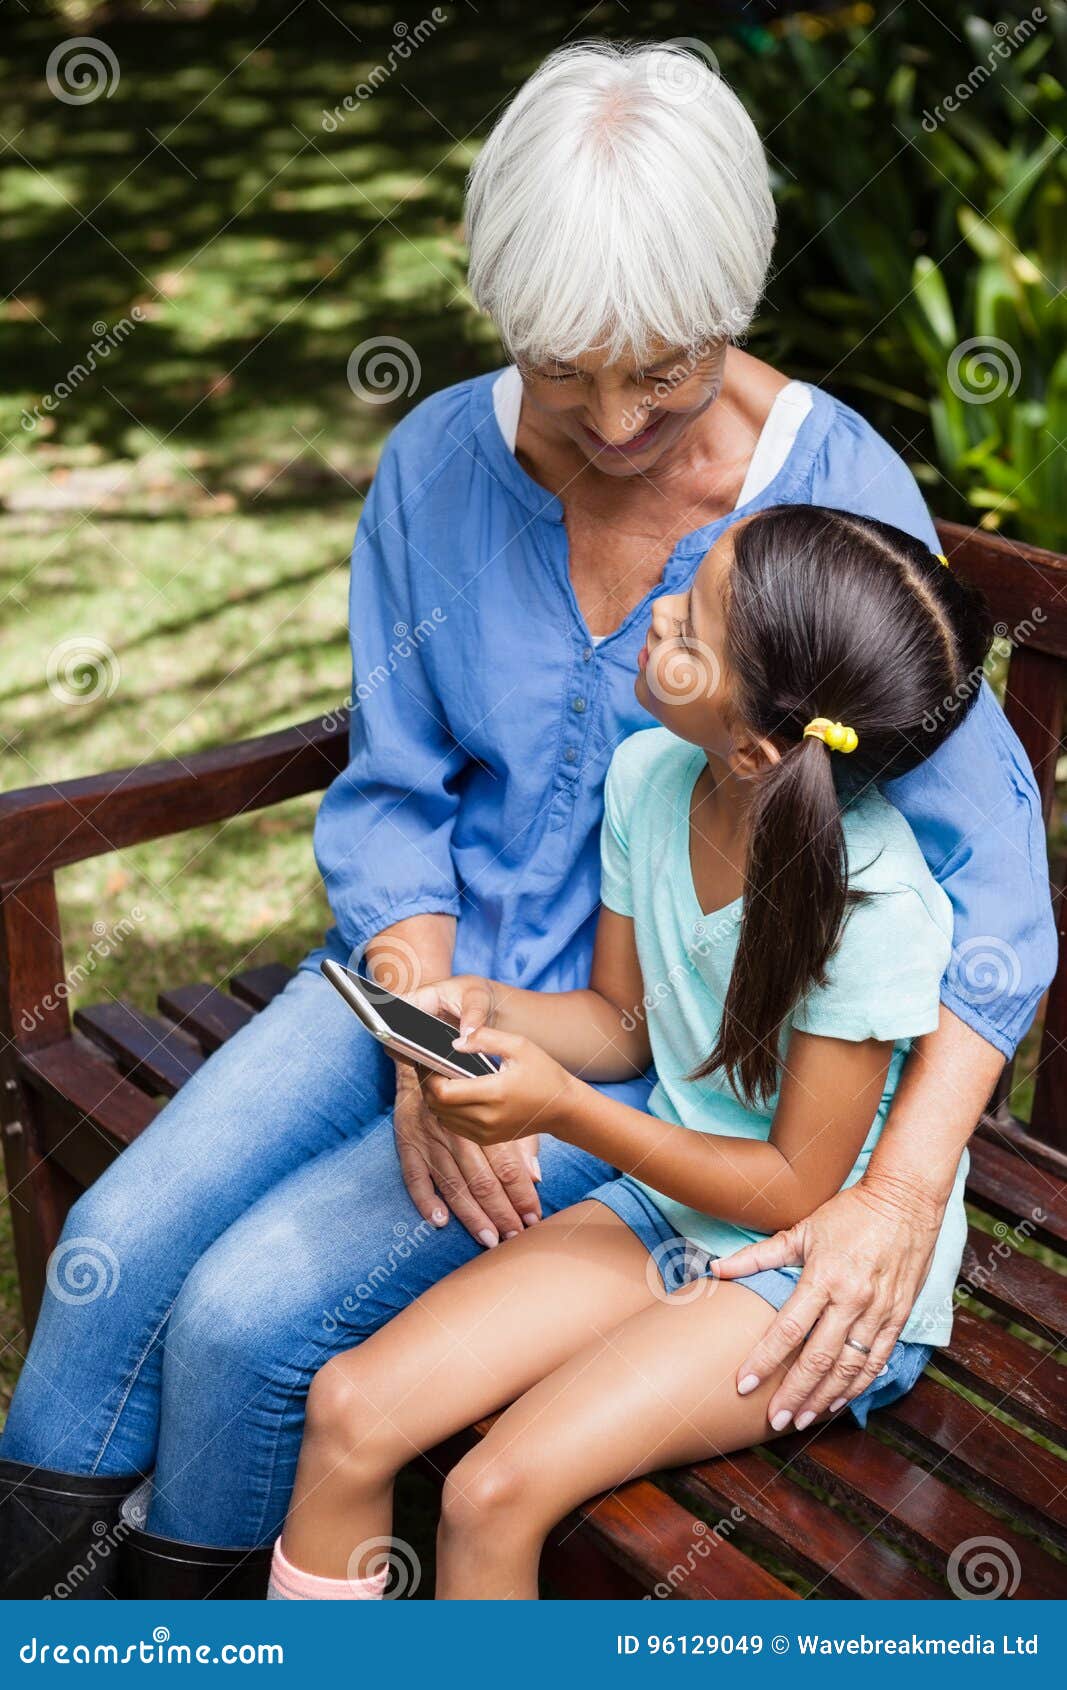 Заставила внука лизать. Бабушка с внучок и телефоном. Бабушка с внучкой Лесбиан. Бабушка сидит на лавочке с внучкой. Бабушка с внучкой лезбиянки.